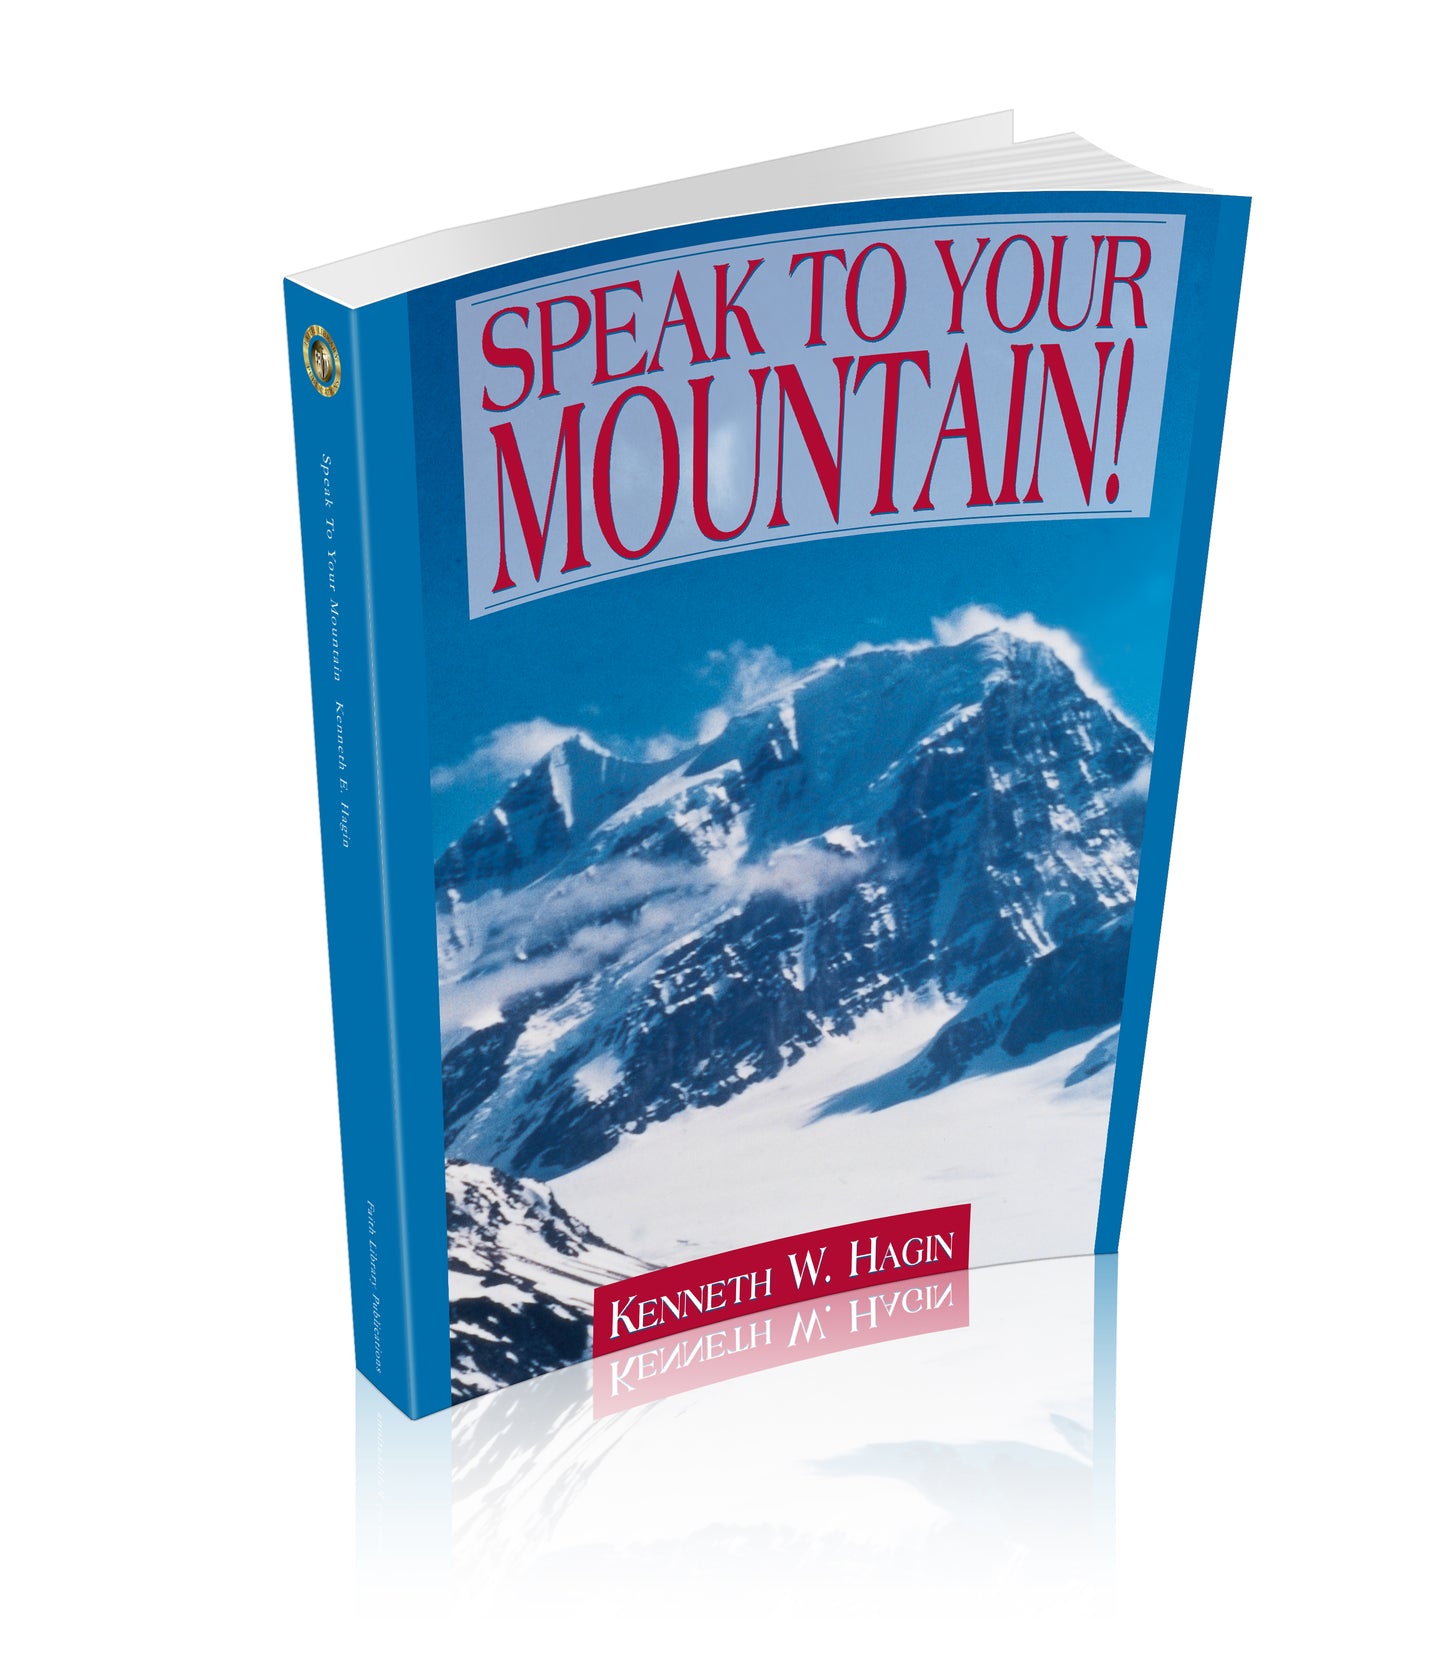 Speak to Your Mountain!